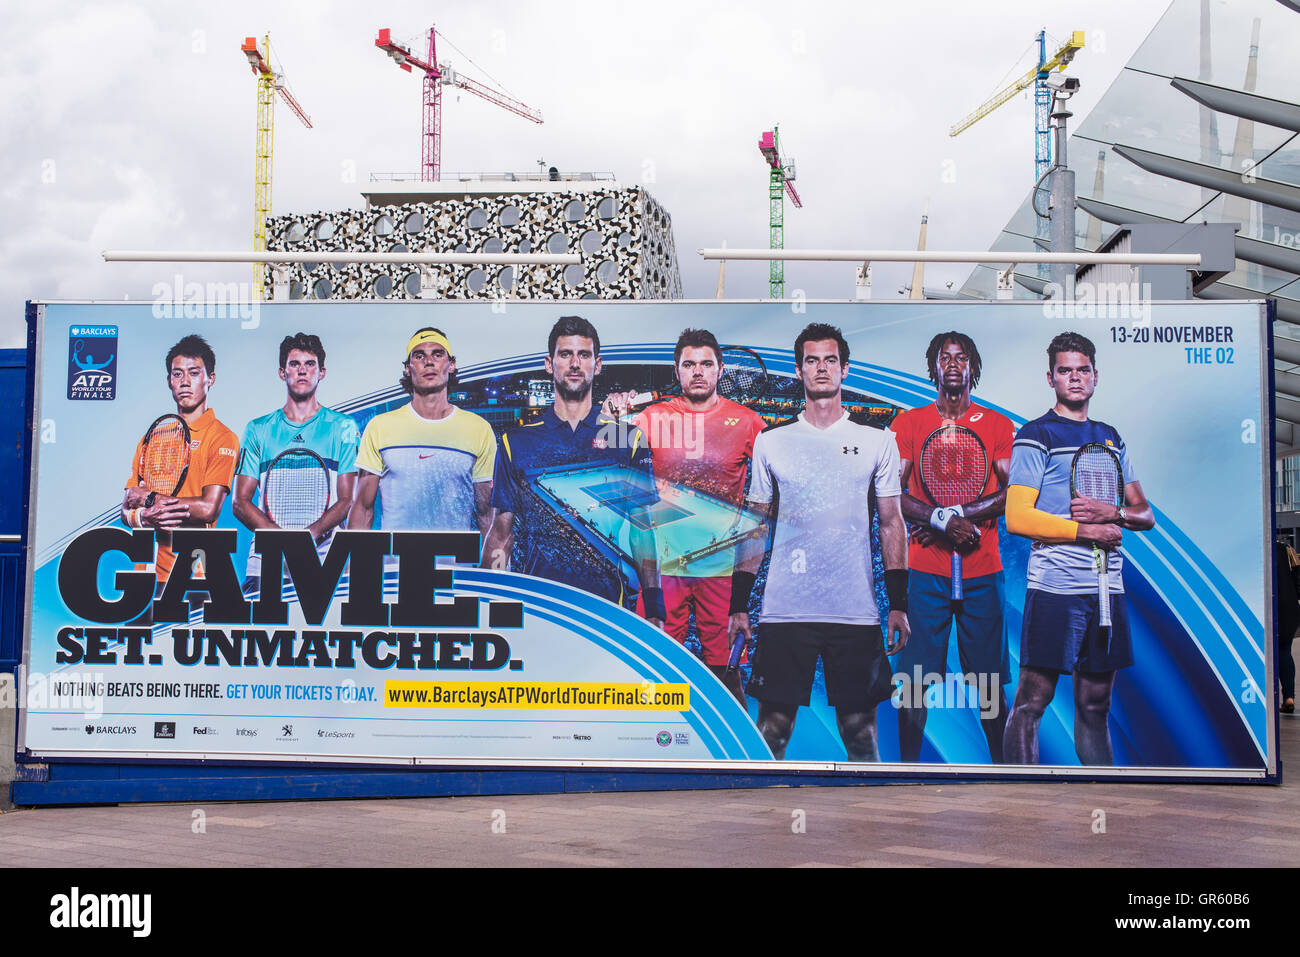 La promotion de l'affichage géant barclays atp world tour finals 2016 qui se tiendra à Londres du 13 au 20 novembre 2016. Banque D'Images